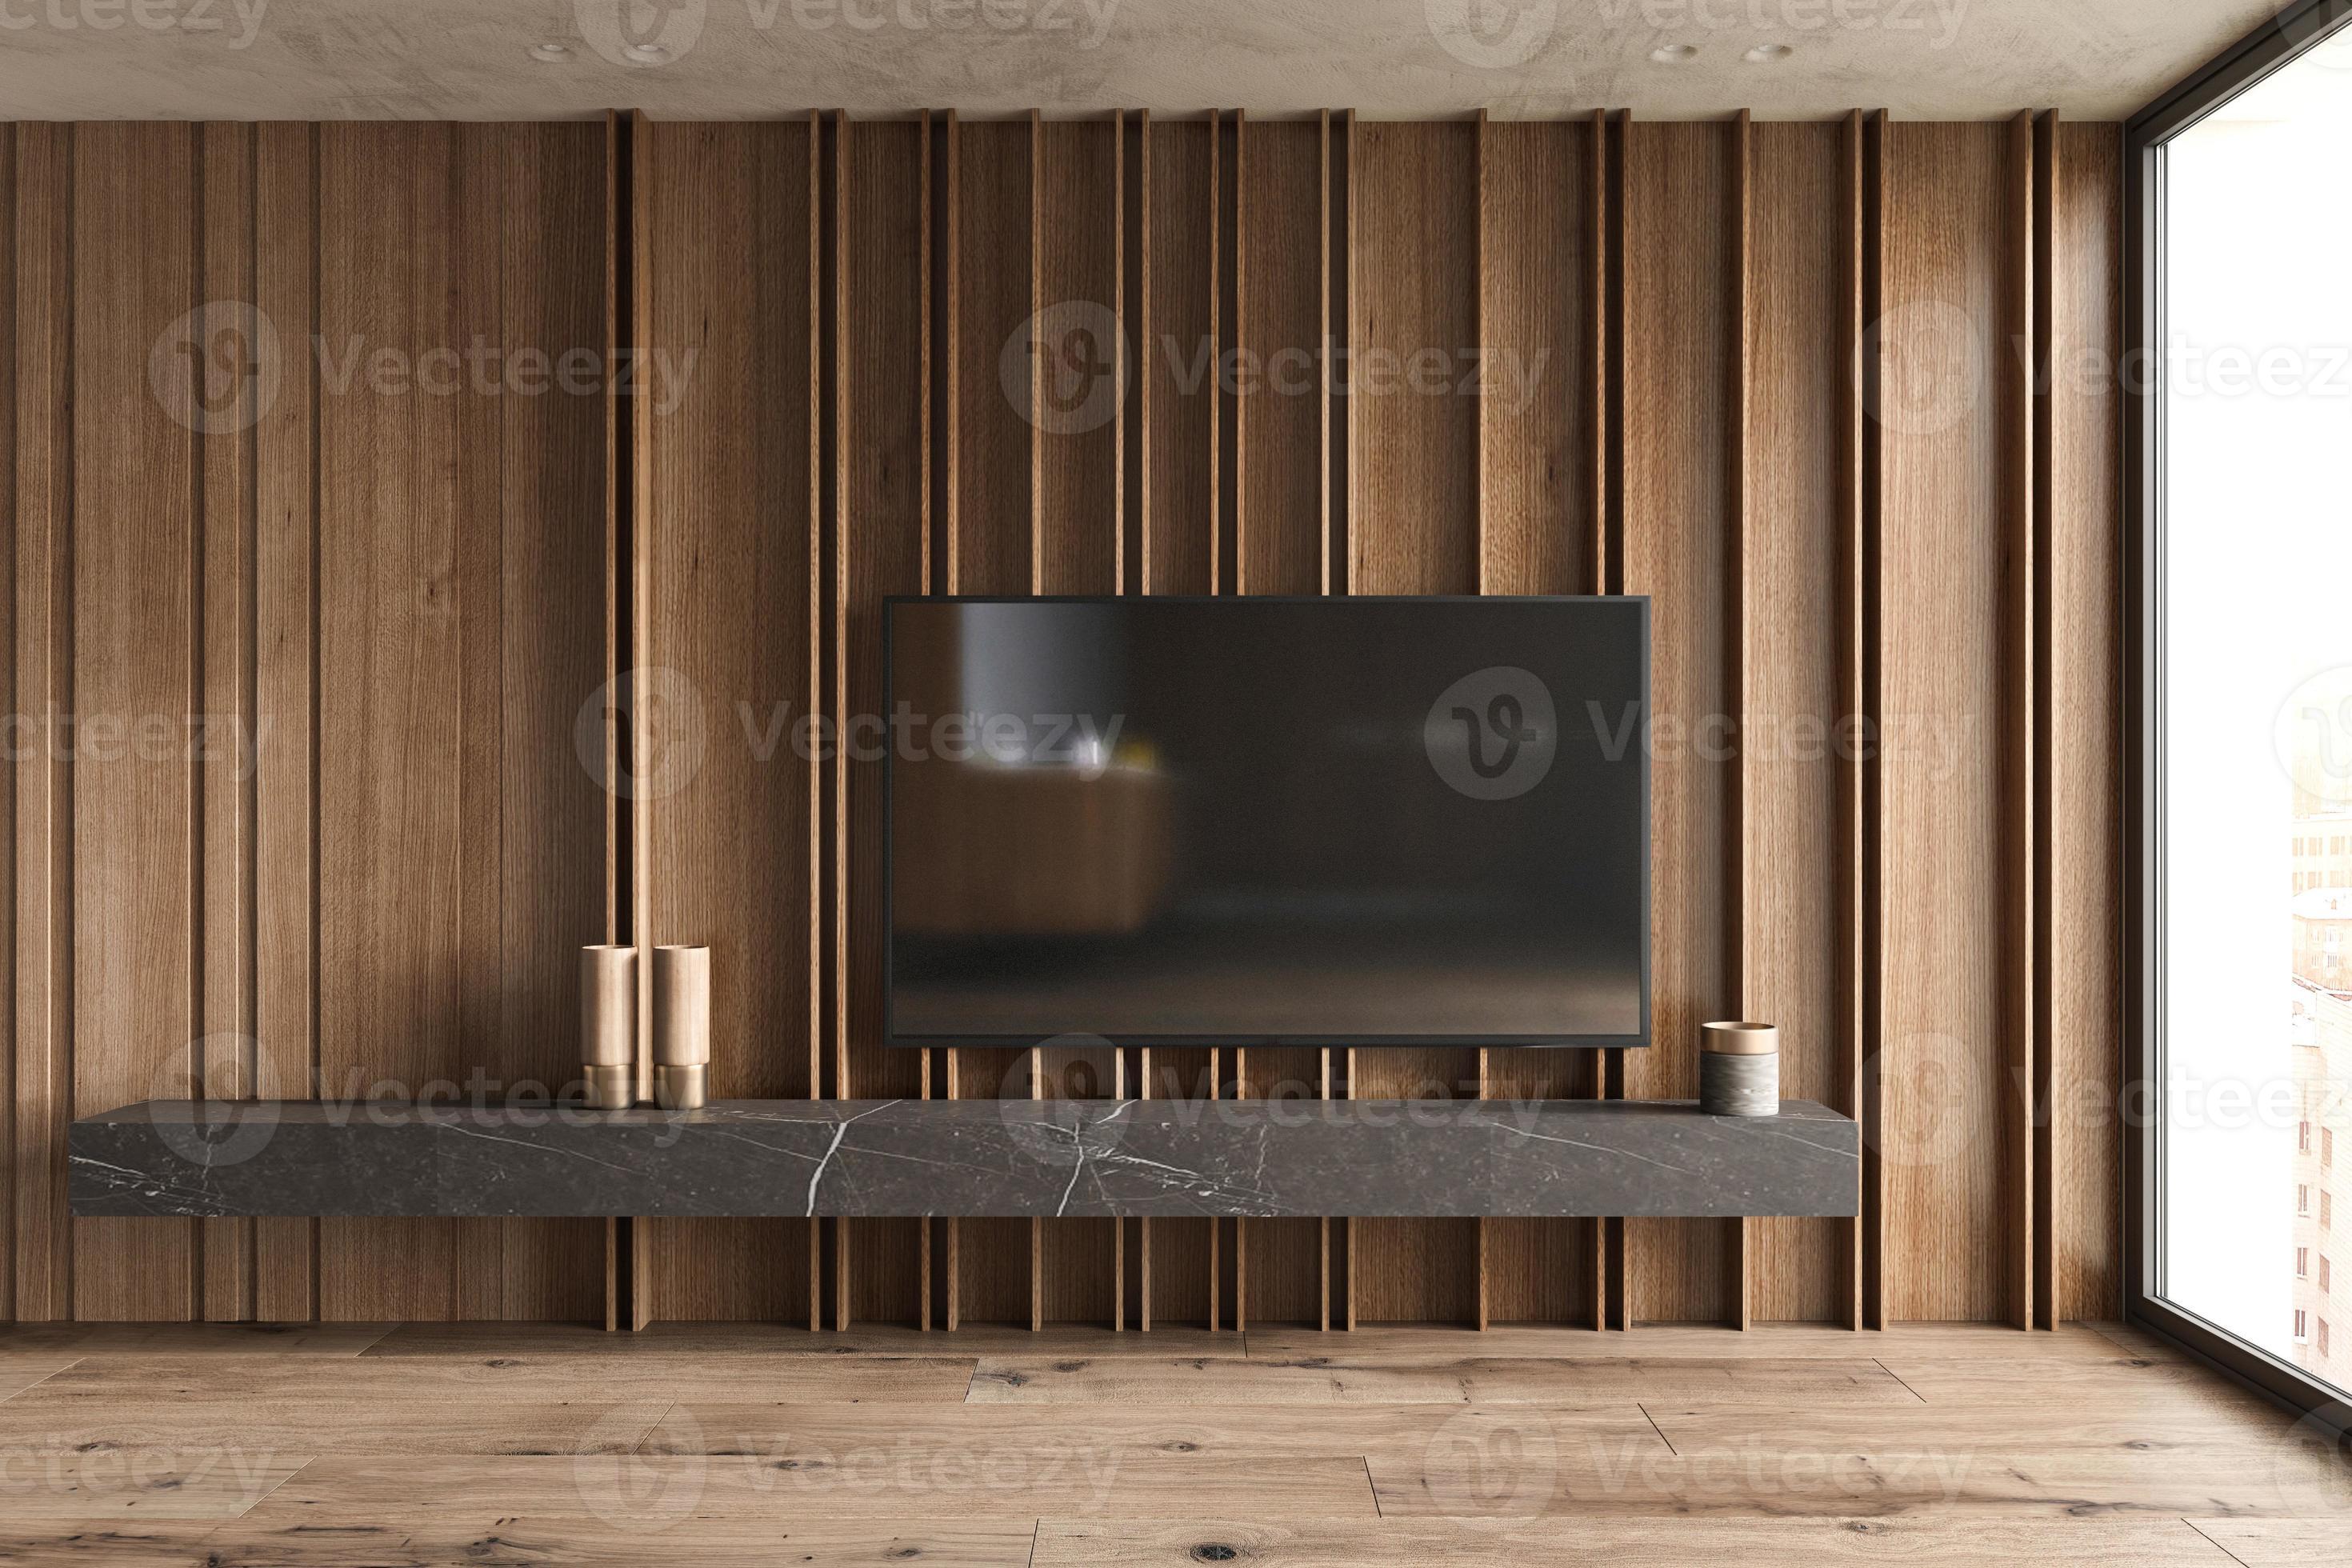 ondernemer Dollar Spijsverteringsorgaan smart tv gemonteerd hang op houten panelen muur in woonkamer met plank en  decor in modern interieur. mock up 3d render illustratie. 5393530 Stockfoto